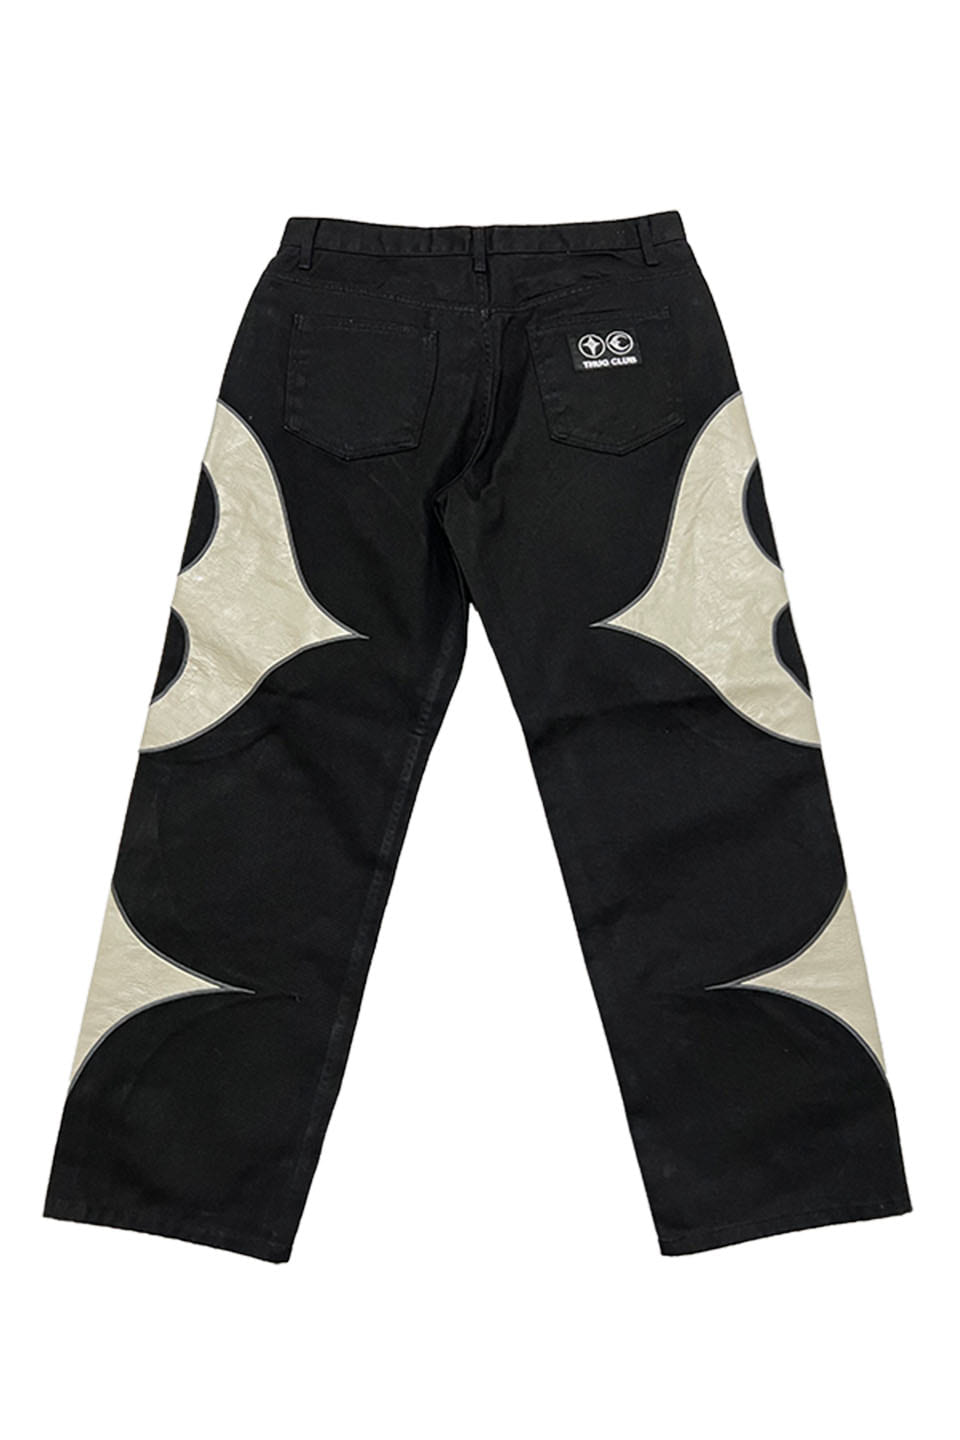 サグクラブ THUG CLUB  23AW  TC Leather Black denim pants TC23PT0901 レザー切替ロングパンツ メンズ 2